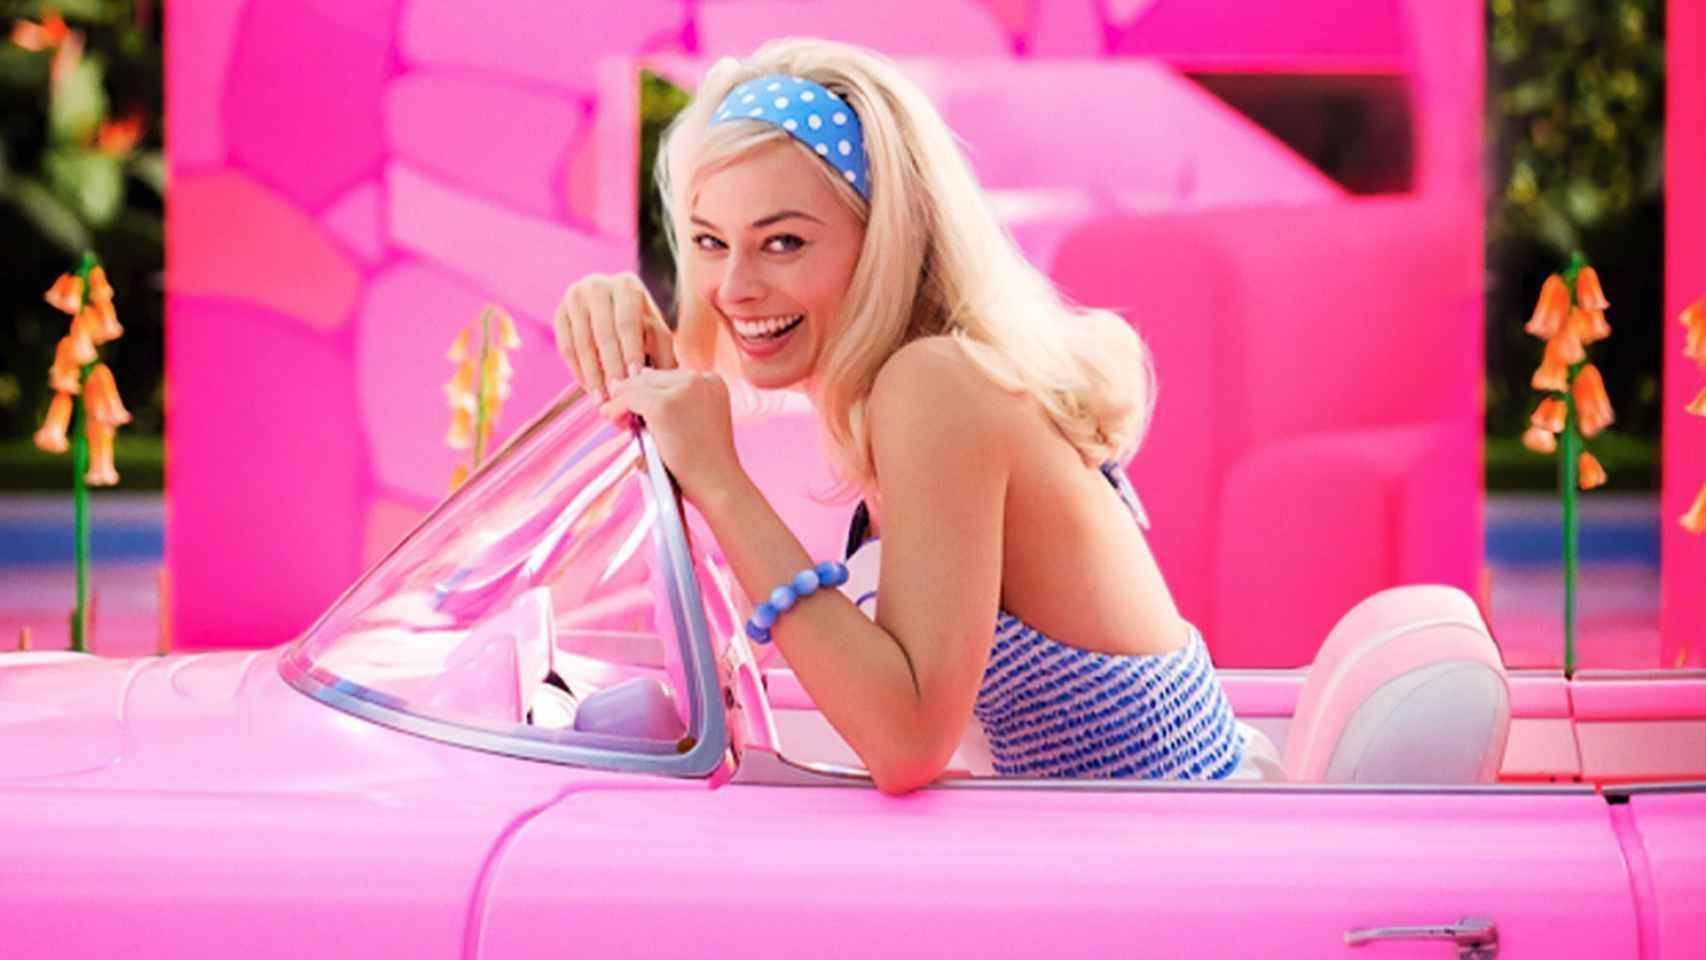 La seqüela de Barbie ja està planificada: sense Ryan Gosling ni Margot Robbie